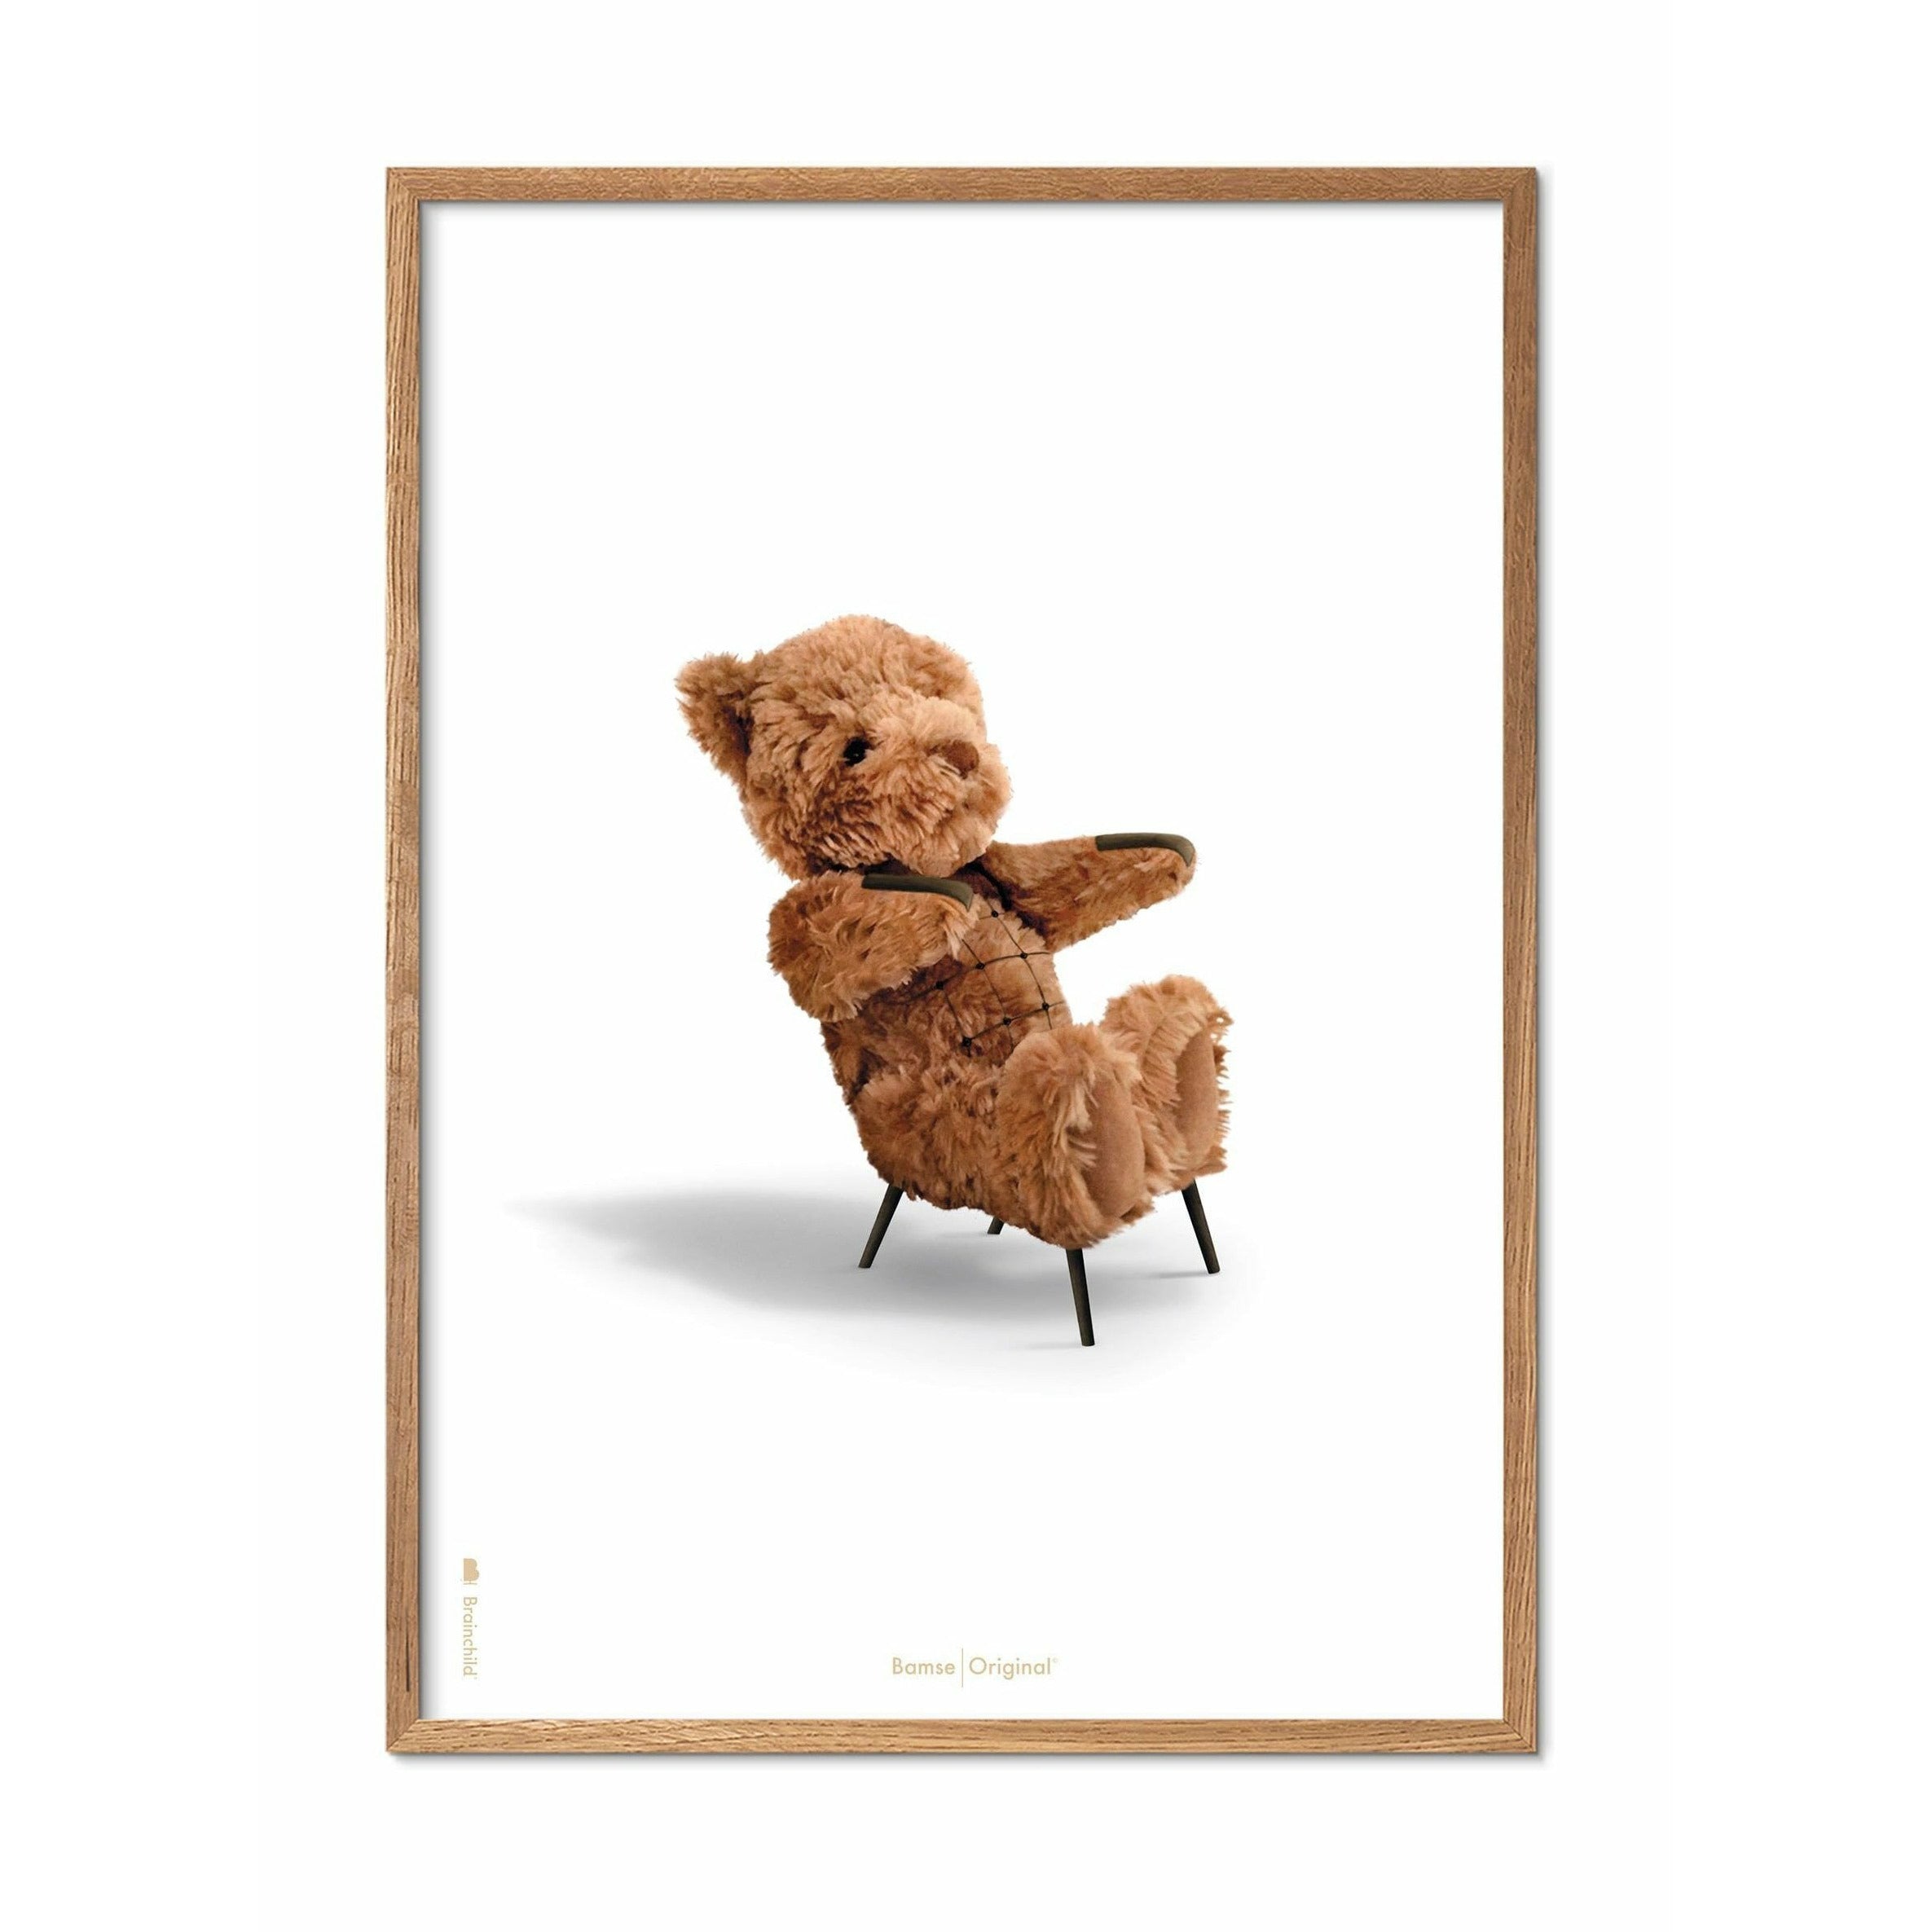 Pomysny plakat Teddy Bear, rama wykonana z jasnego drewna 70x100 cm, białe tło